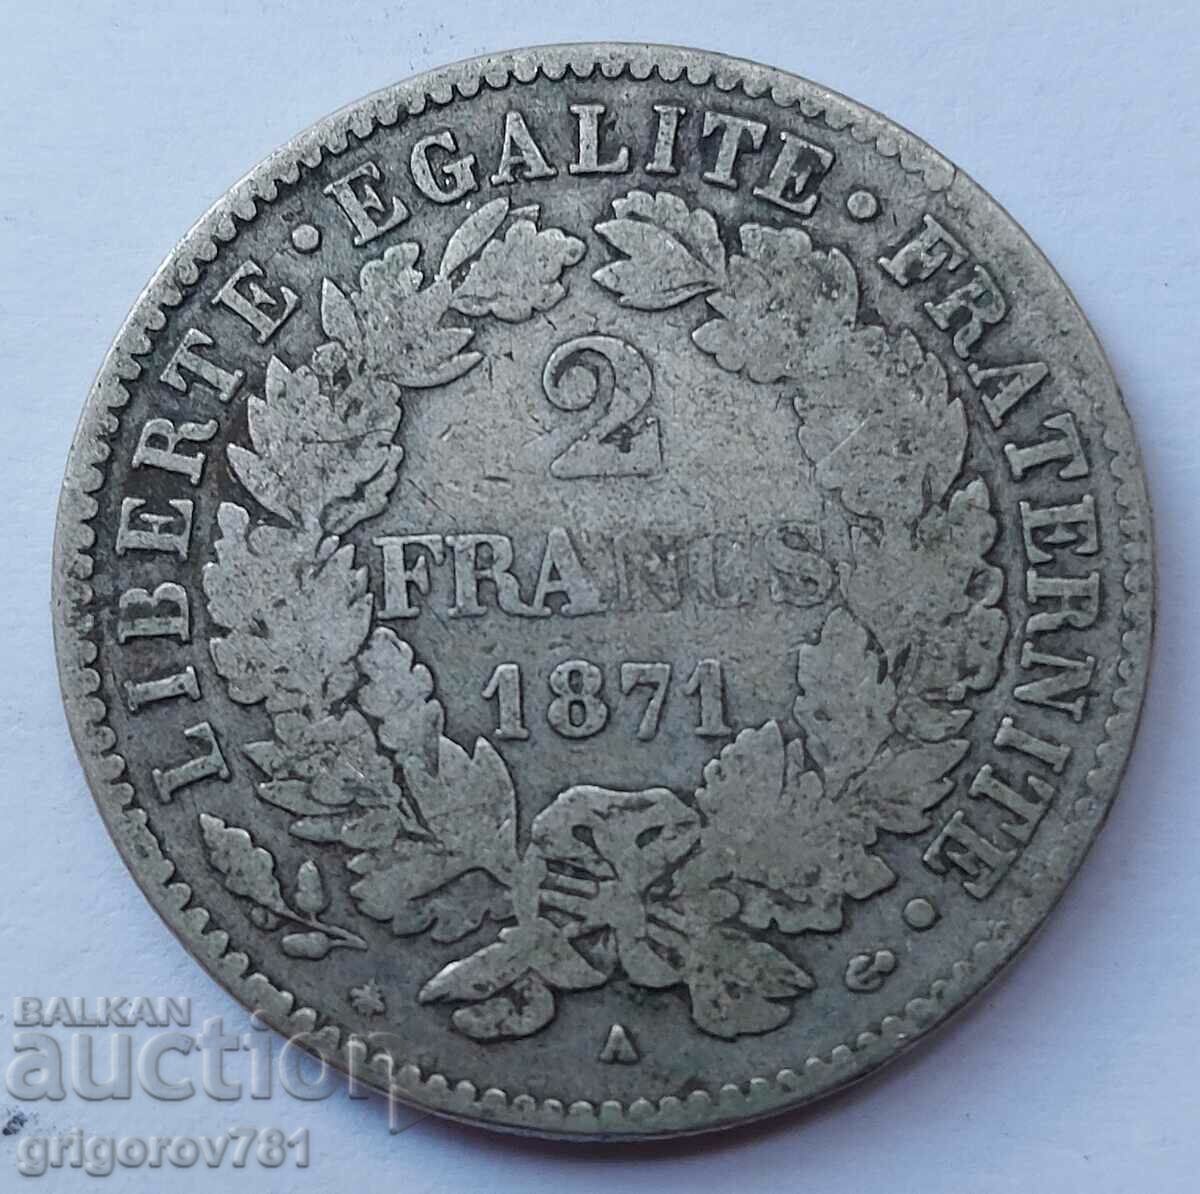 Ασημένιο 2 φράγκα Γαλλία 1871 Α - ασημένιο νόμισμα №28